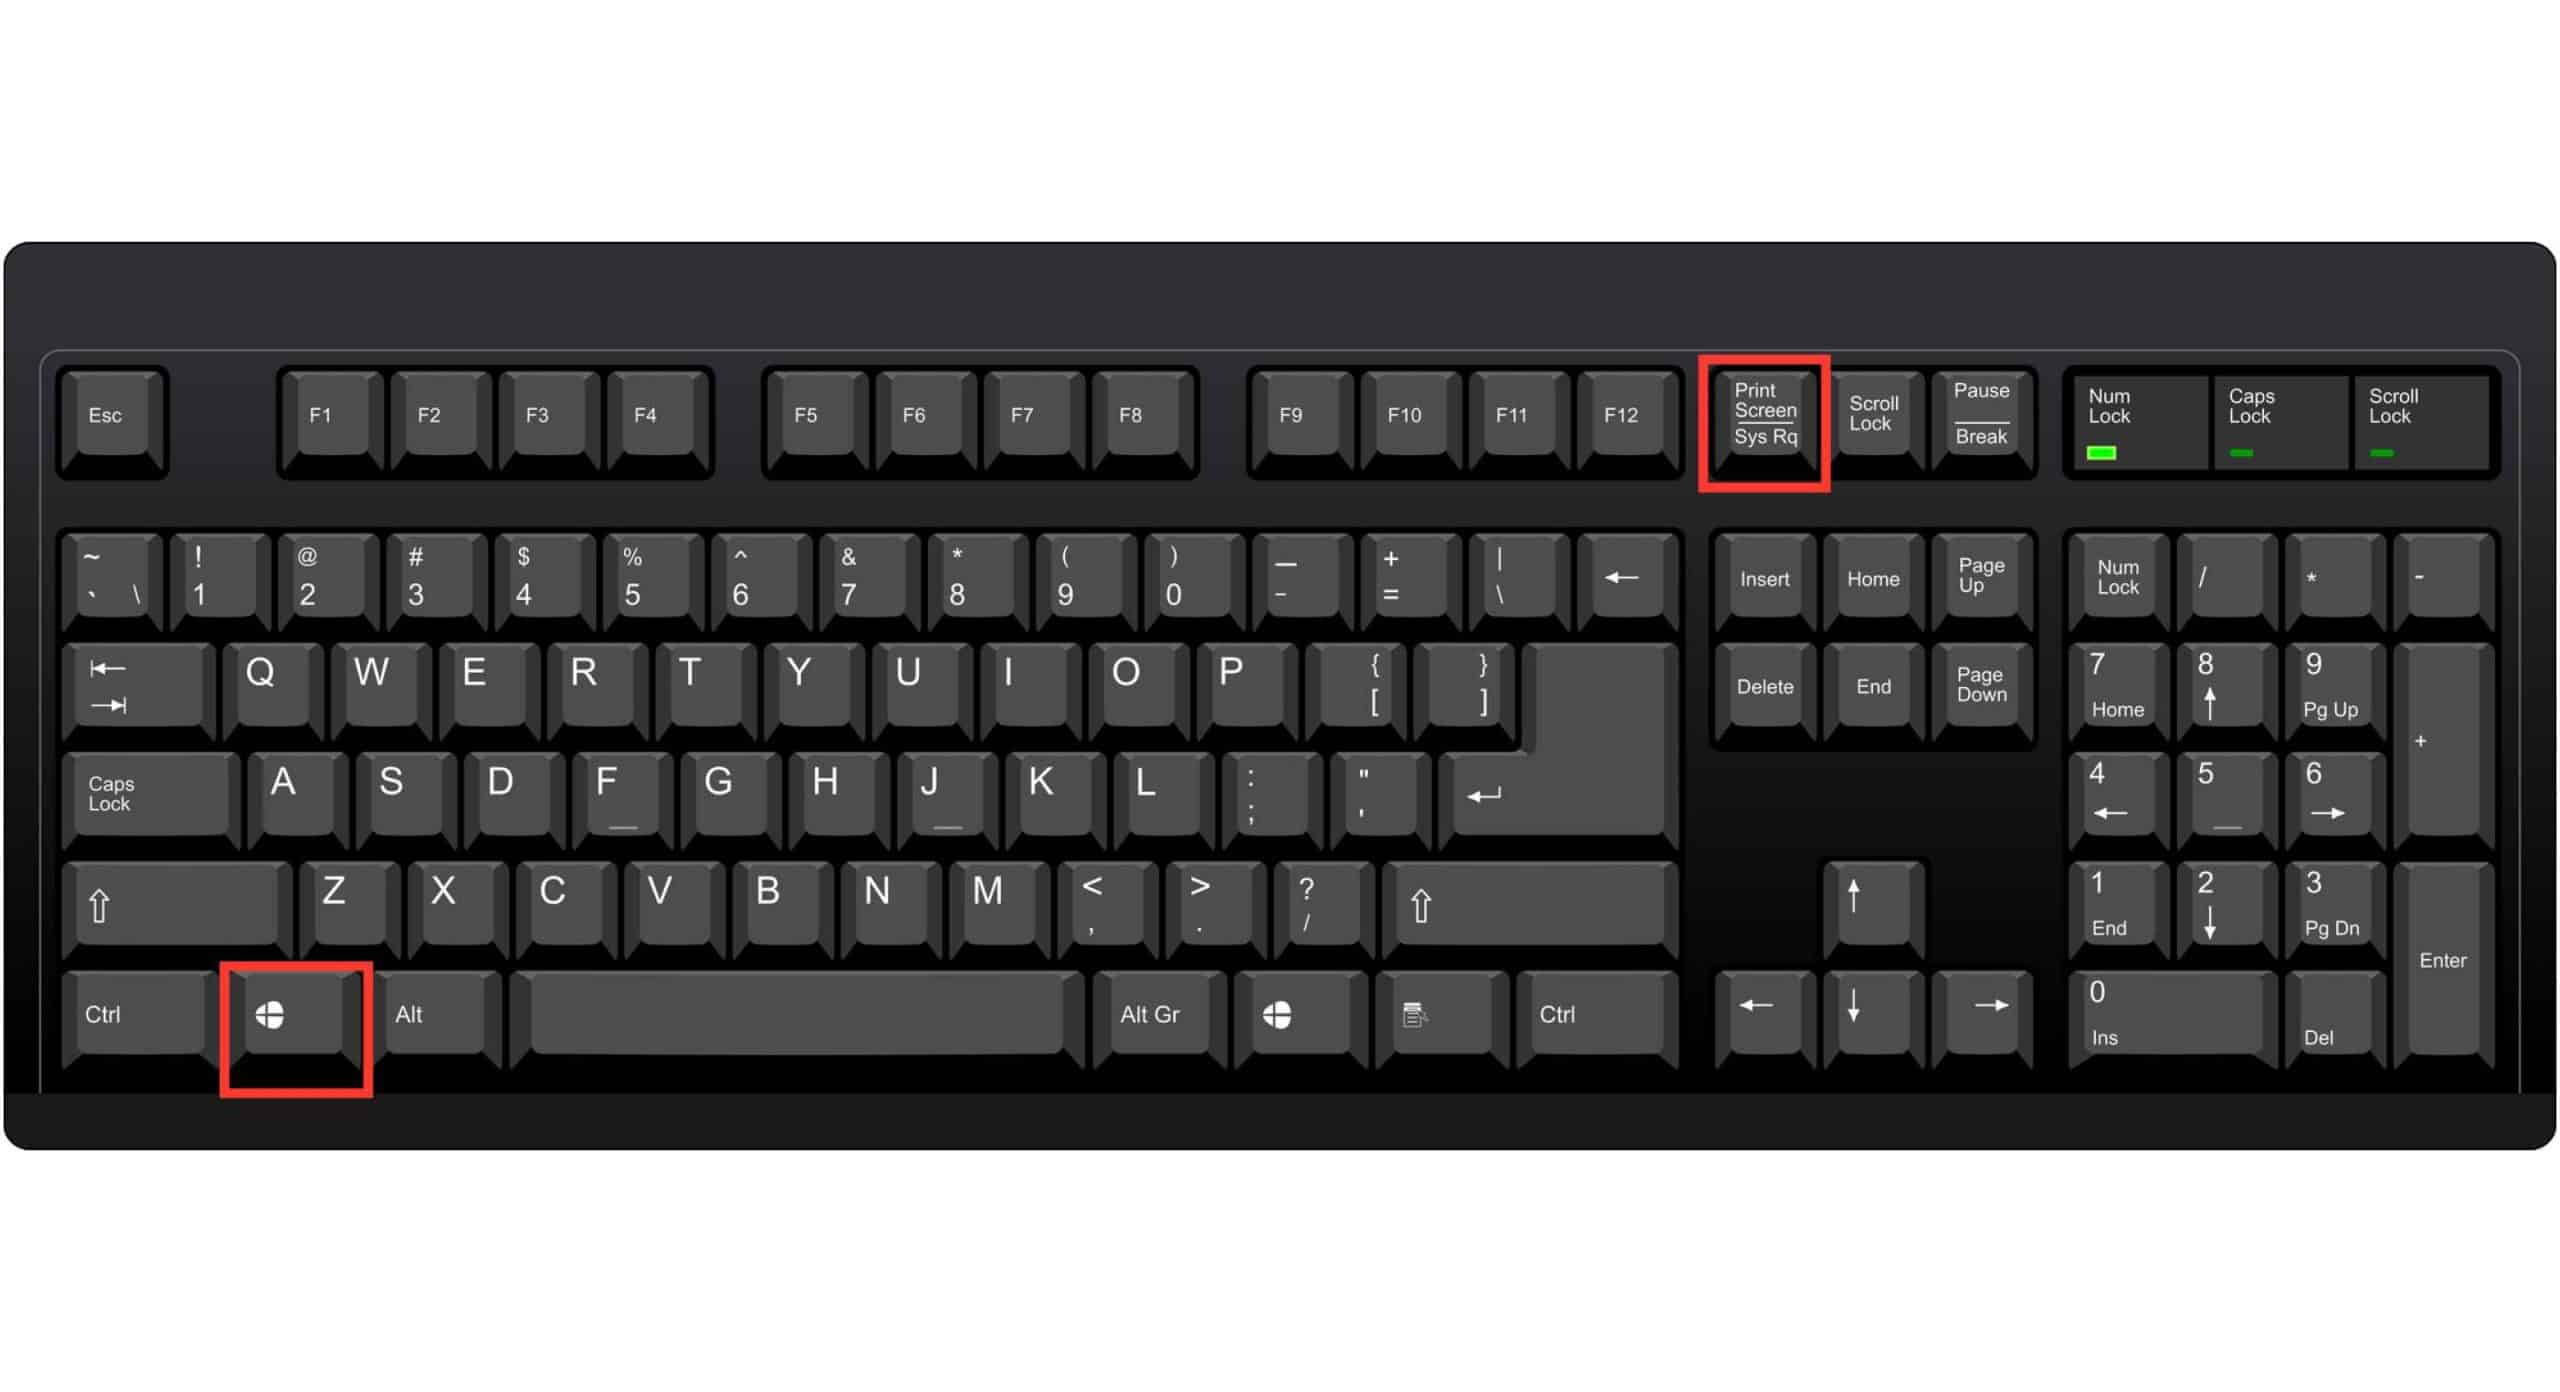 Temukan-tombol-Windows-dan-PrtSc-atau-Prt-Sc-Sysrq-pada-keyboard-laptopPC-Anda